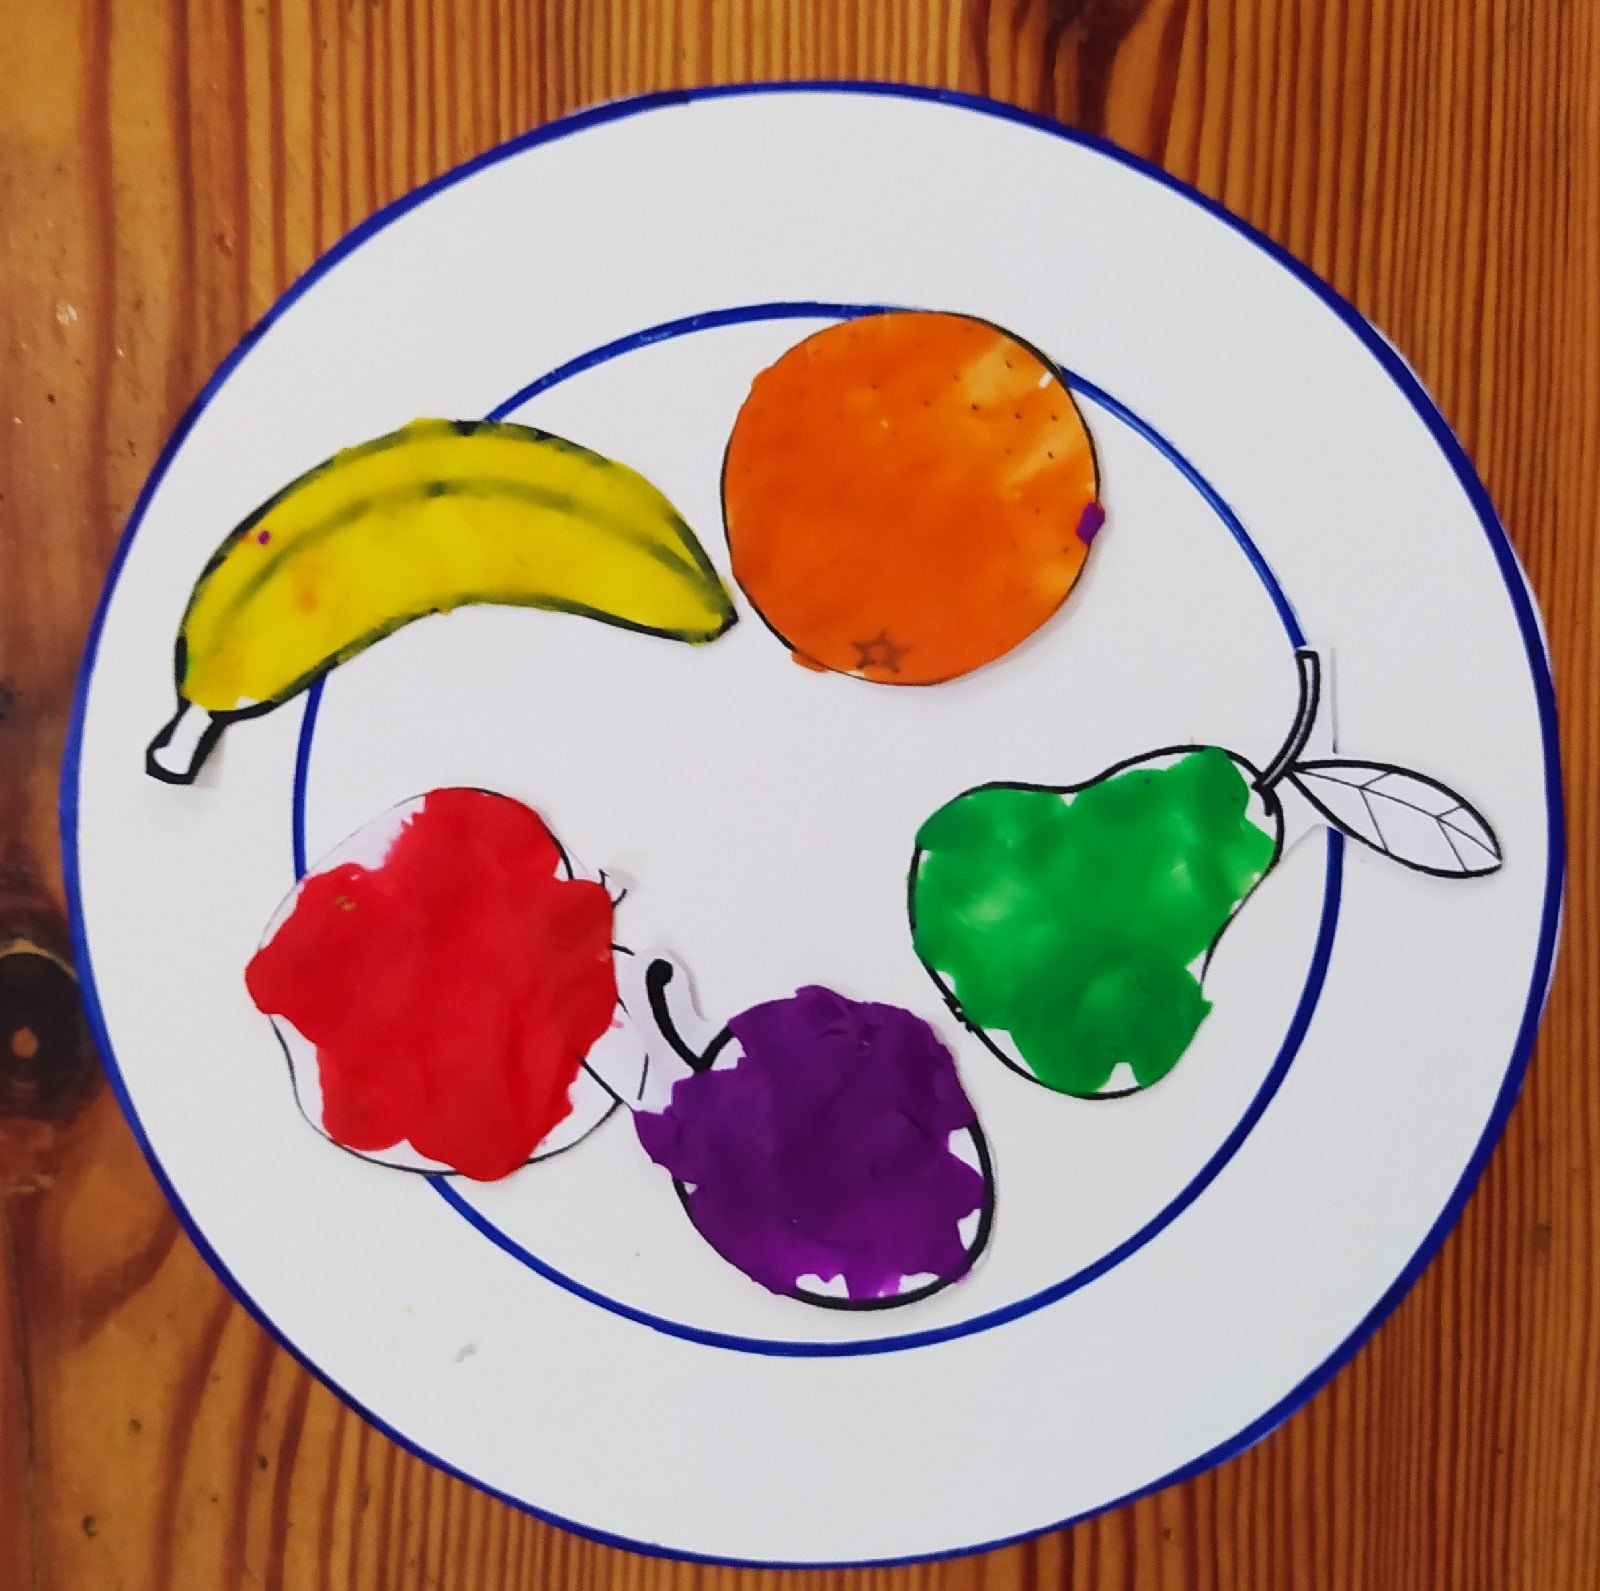 Занятие фрукты младшей группы. Аппликация фрукты на тарелке. Аппликация овощей и фруктов. Аппликация фрукты средняя группа. Рисование в средней группе фрукты на тарелочке.